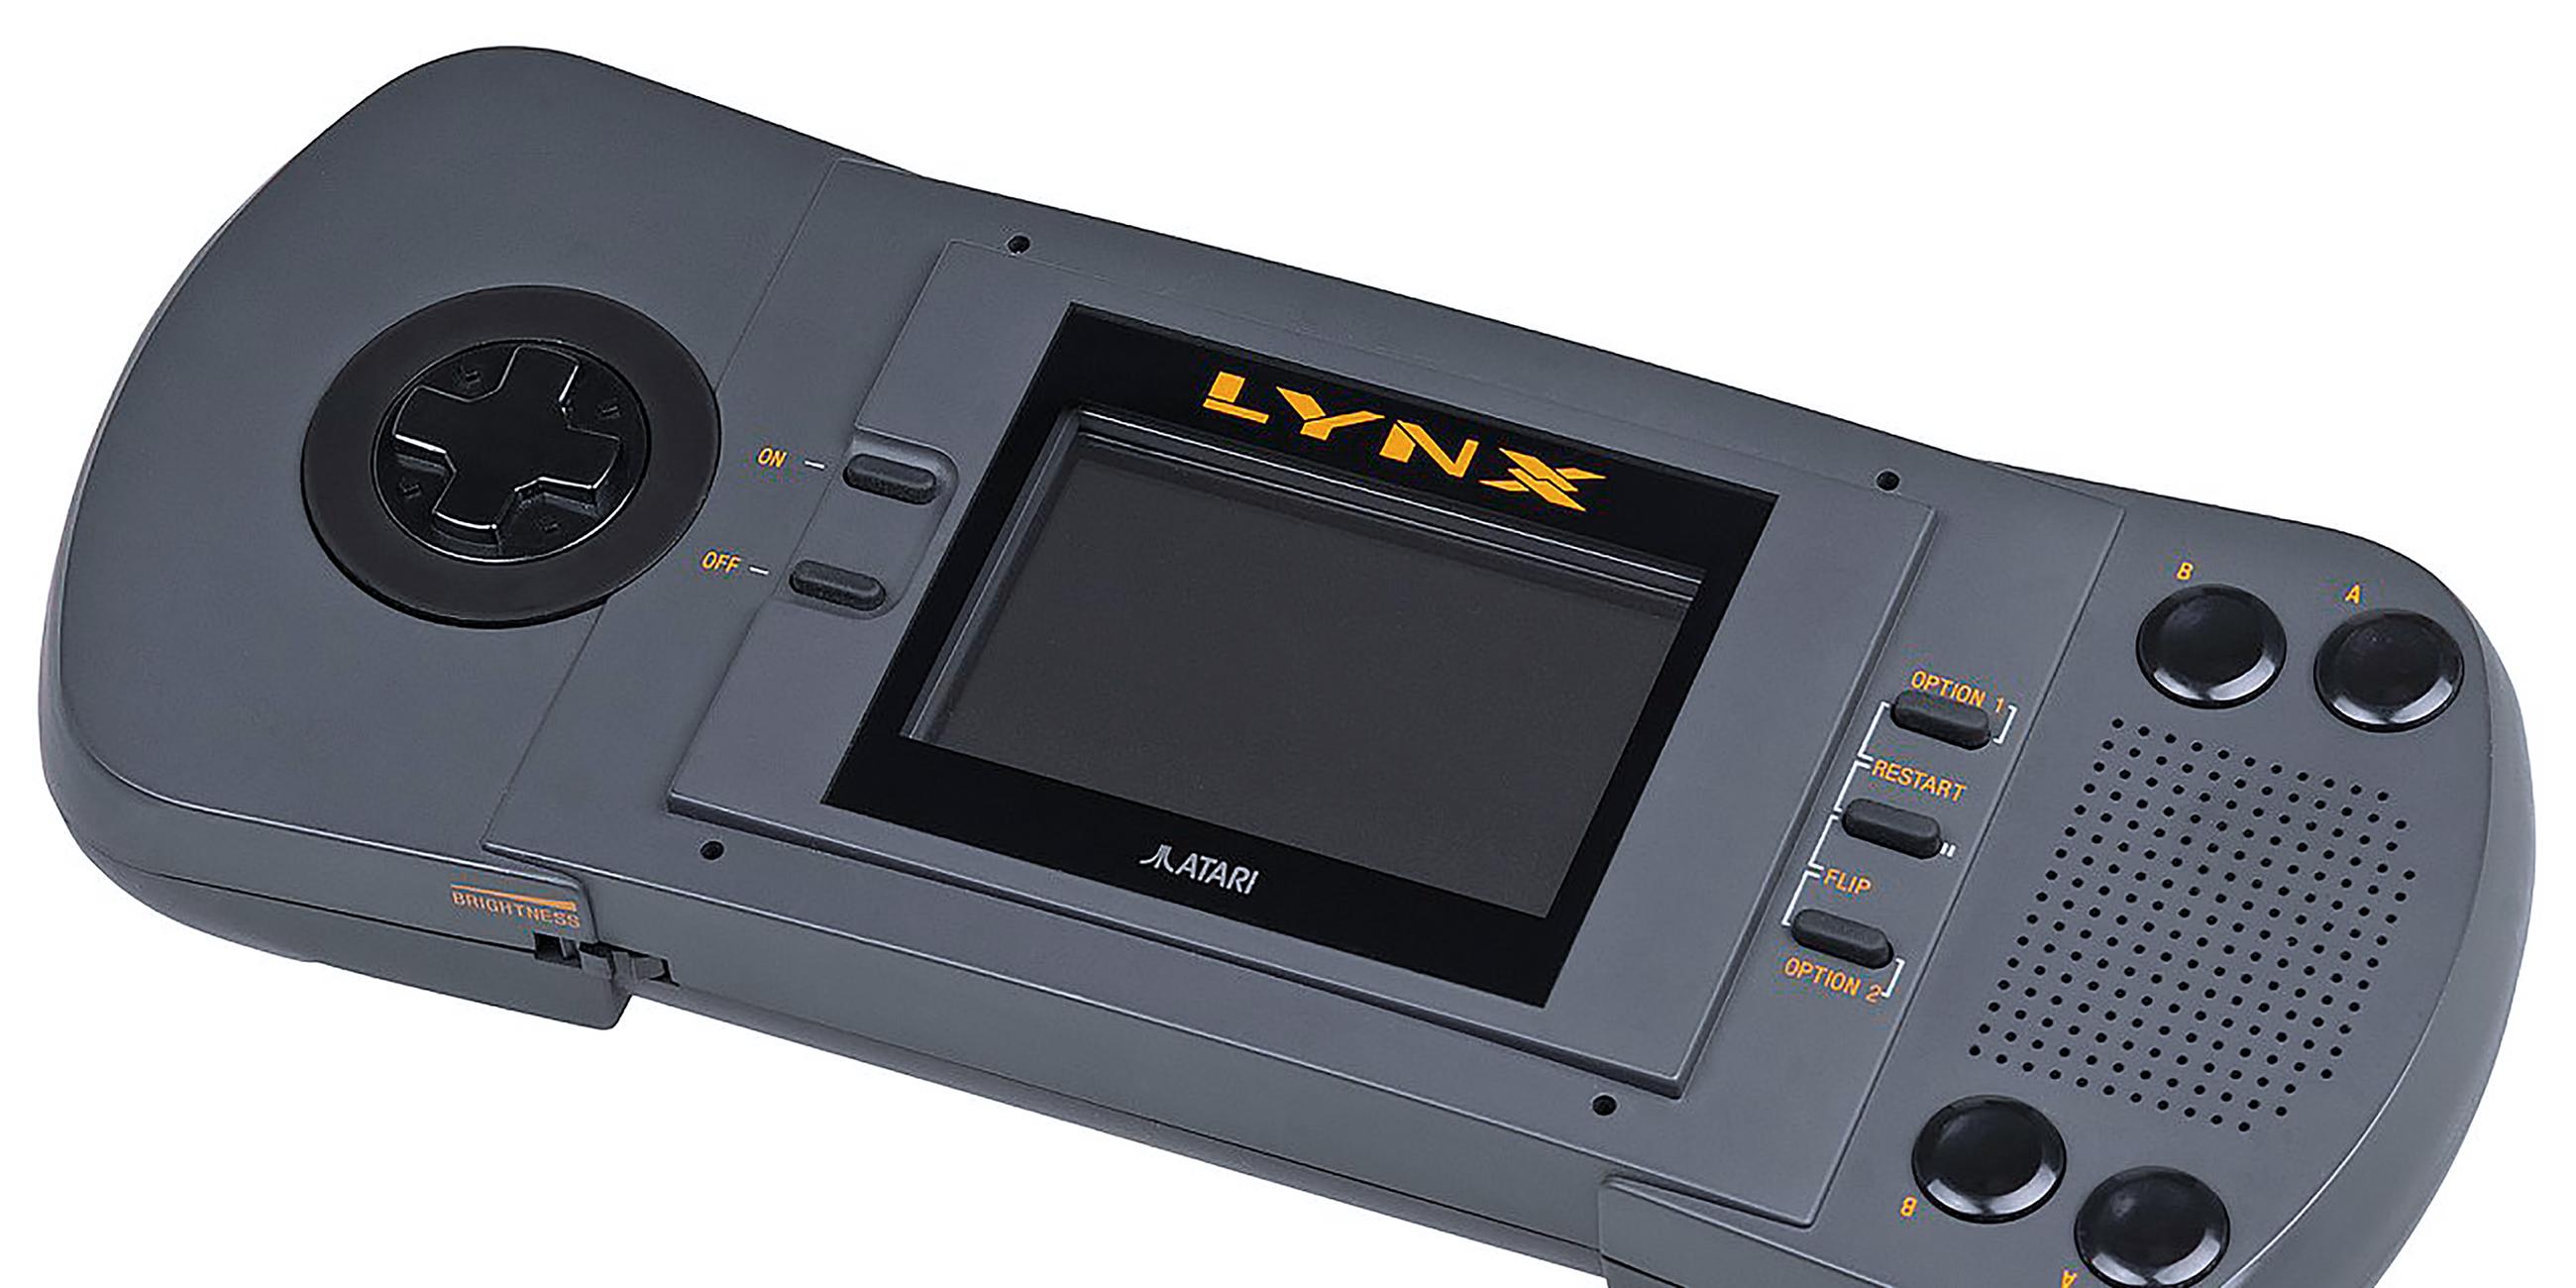 Technisch war der Game Boy dem Atari Lynx (s. Bild) und Sega Game Gear unterlegen – dafür war er günstig und seine Batterien hielten 15 Stunden lang.